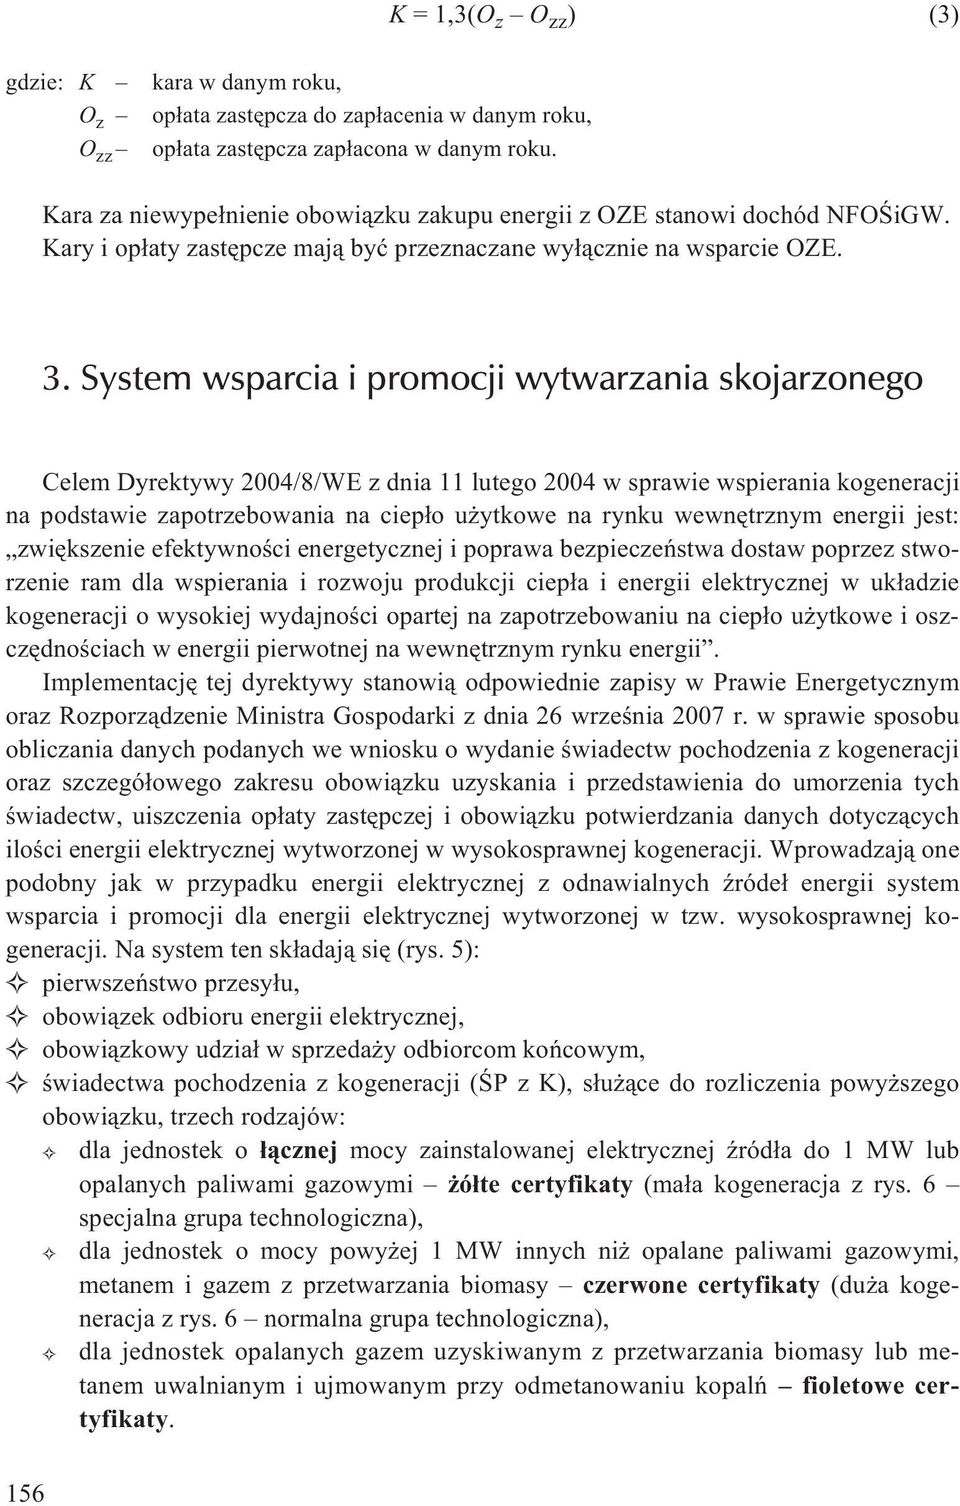 System wsparcia i promocji wytwarzania skojarzonego Celem Dyrektywy 2004/8/WE z dnia 11 lutego 2004 w sprawie wspierania kogeneracji na podstawie zapotrzebowania na ciep³o u ytkowe na rynku